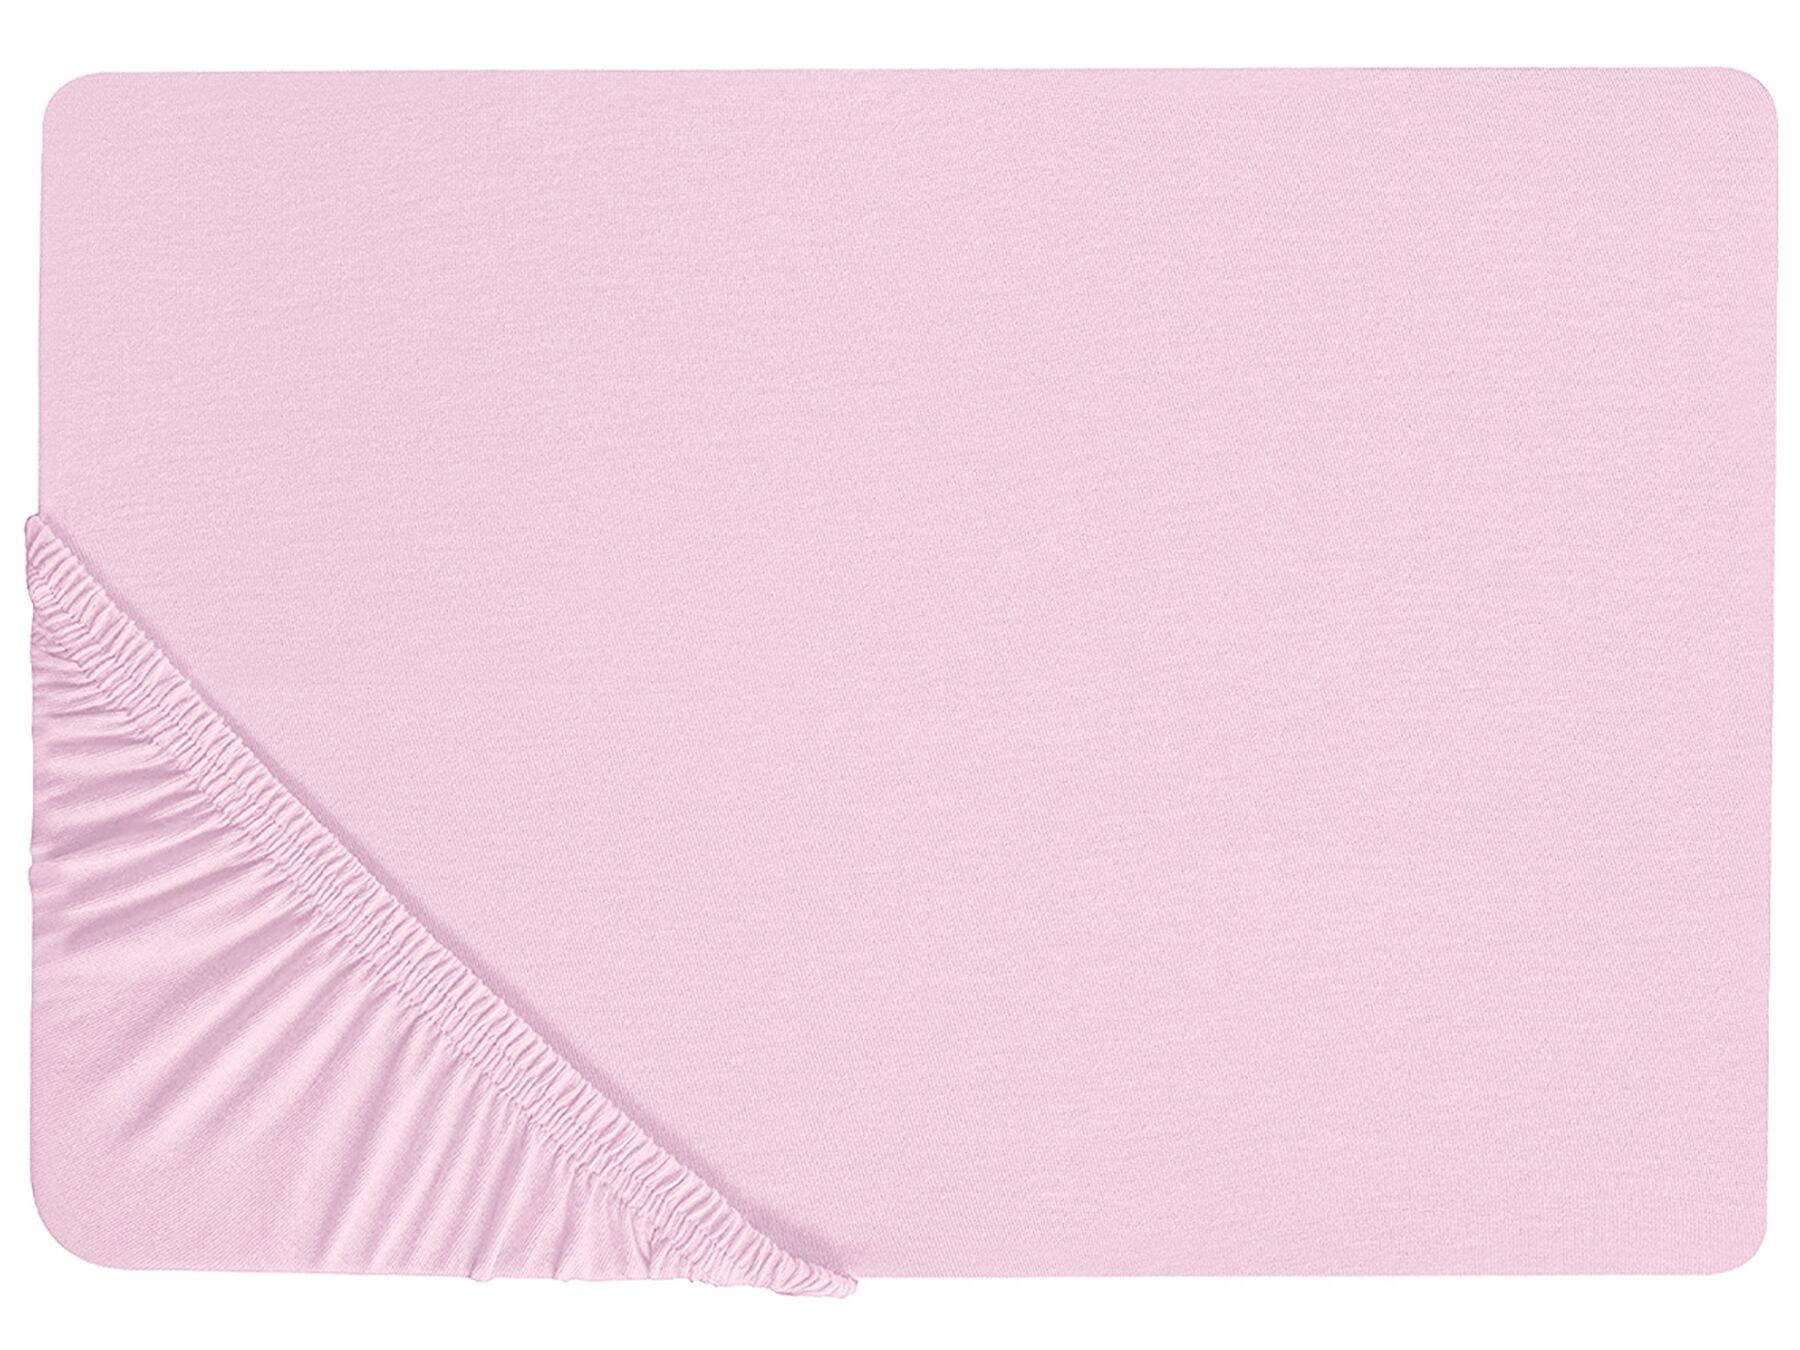 Rózsaszín pamut gumis lepedő 160 x 200 cm JANBU_845372